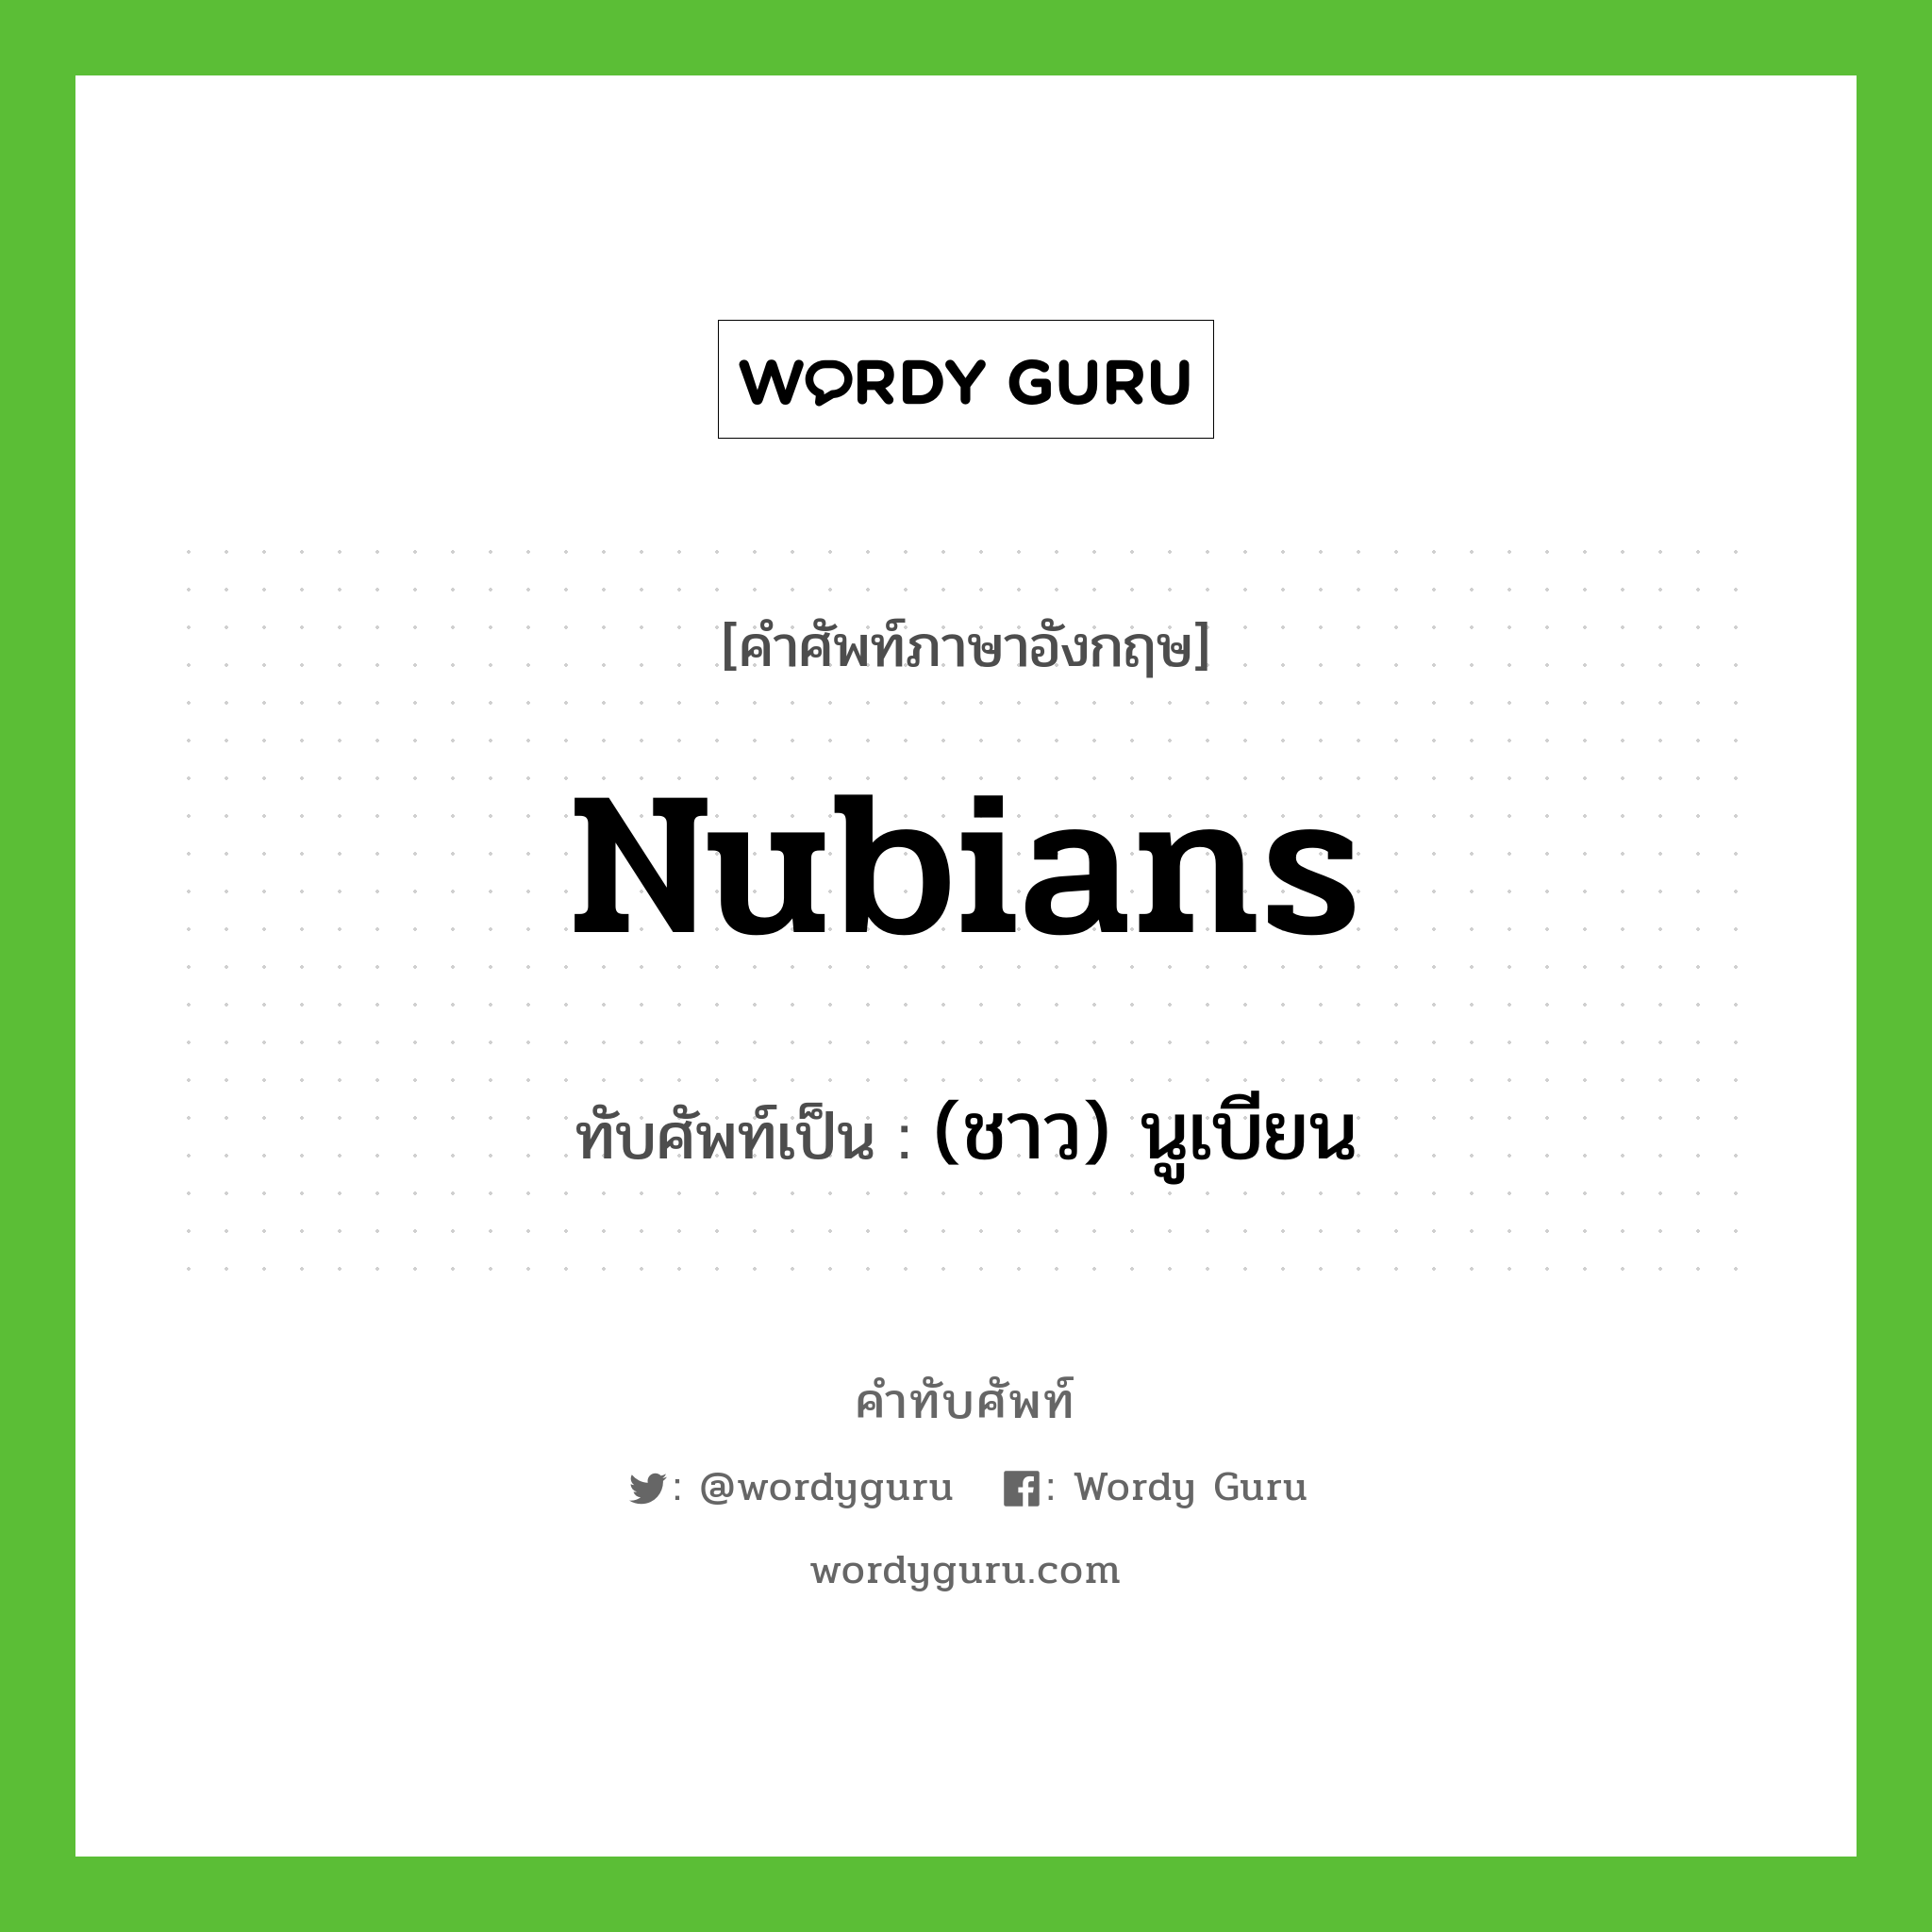 (ชาว) นูเบียน เขียนอย่างไร?, คำศัพท์ภาษาอังกฤษ (ชาว) นูเบียน ทับศัพท์เป็น Nubians